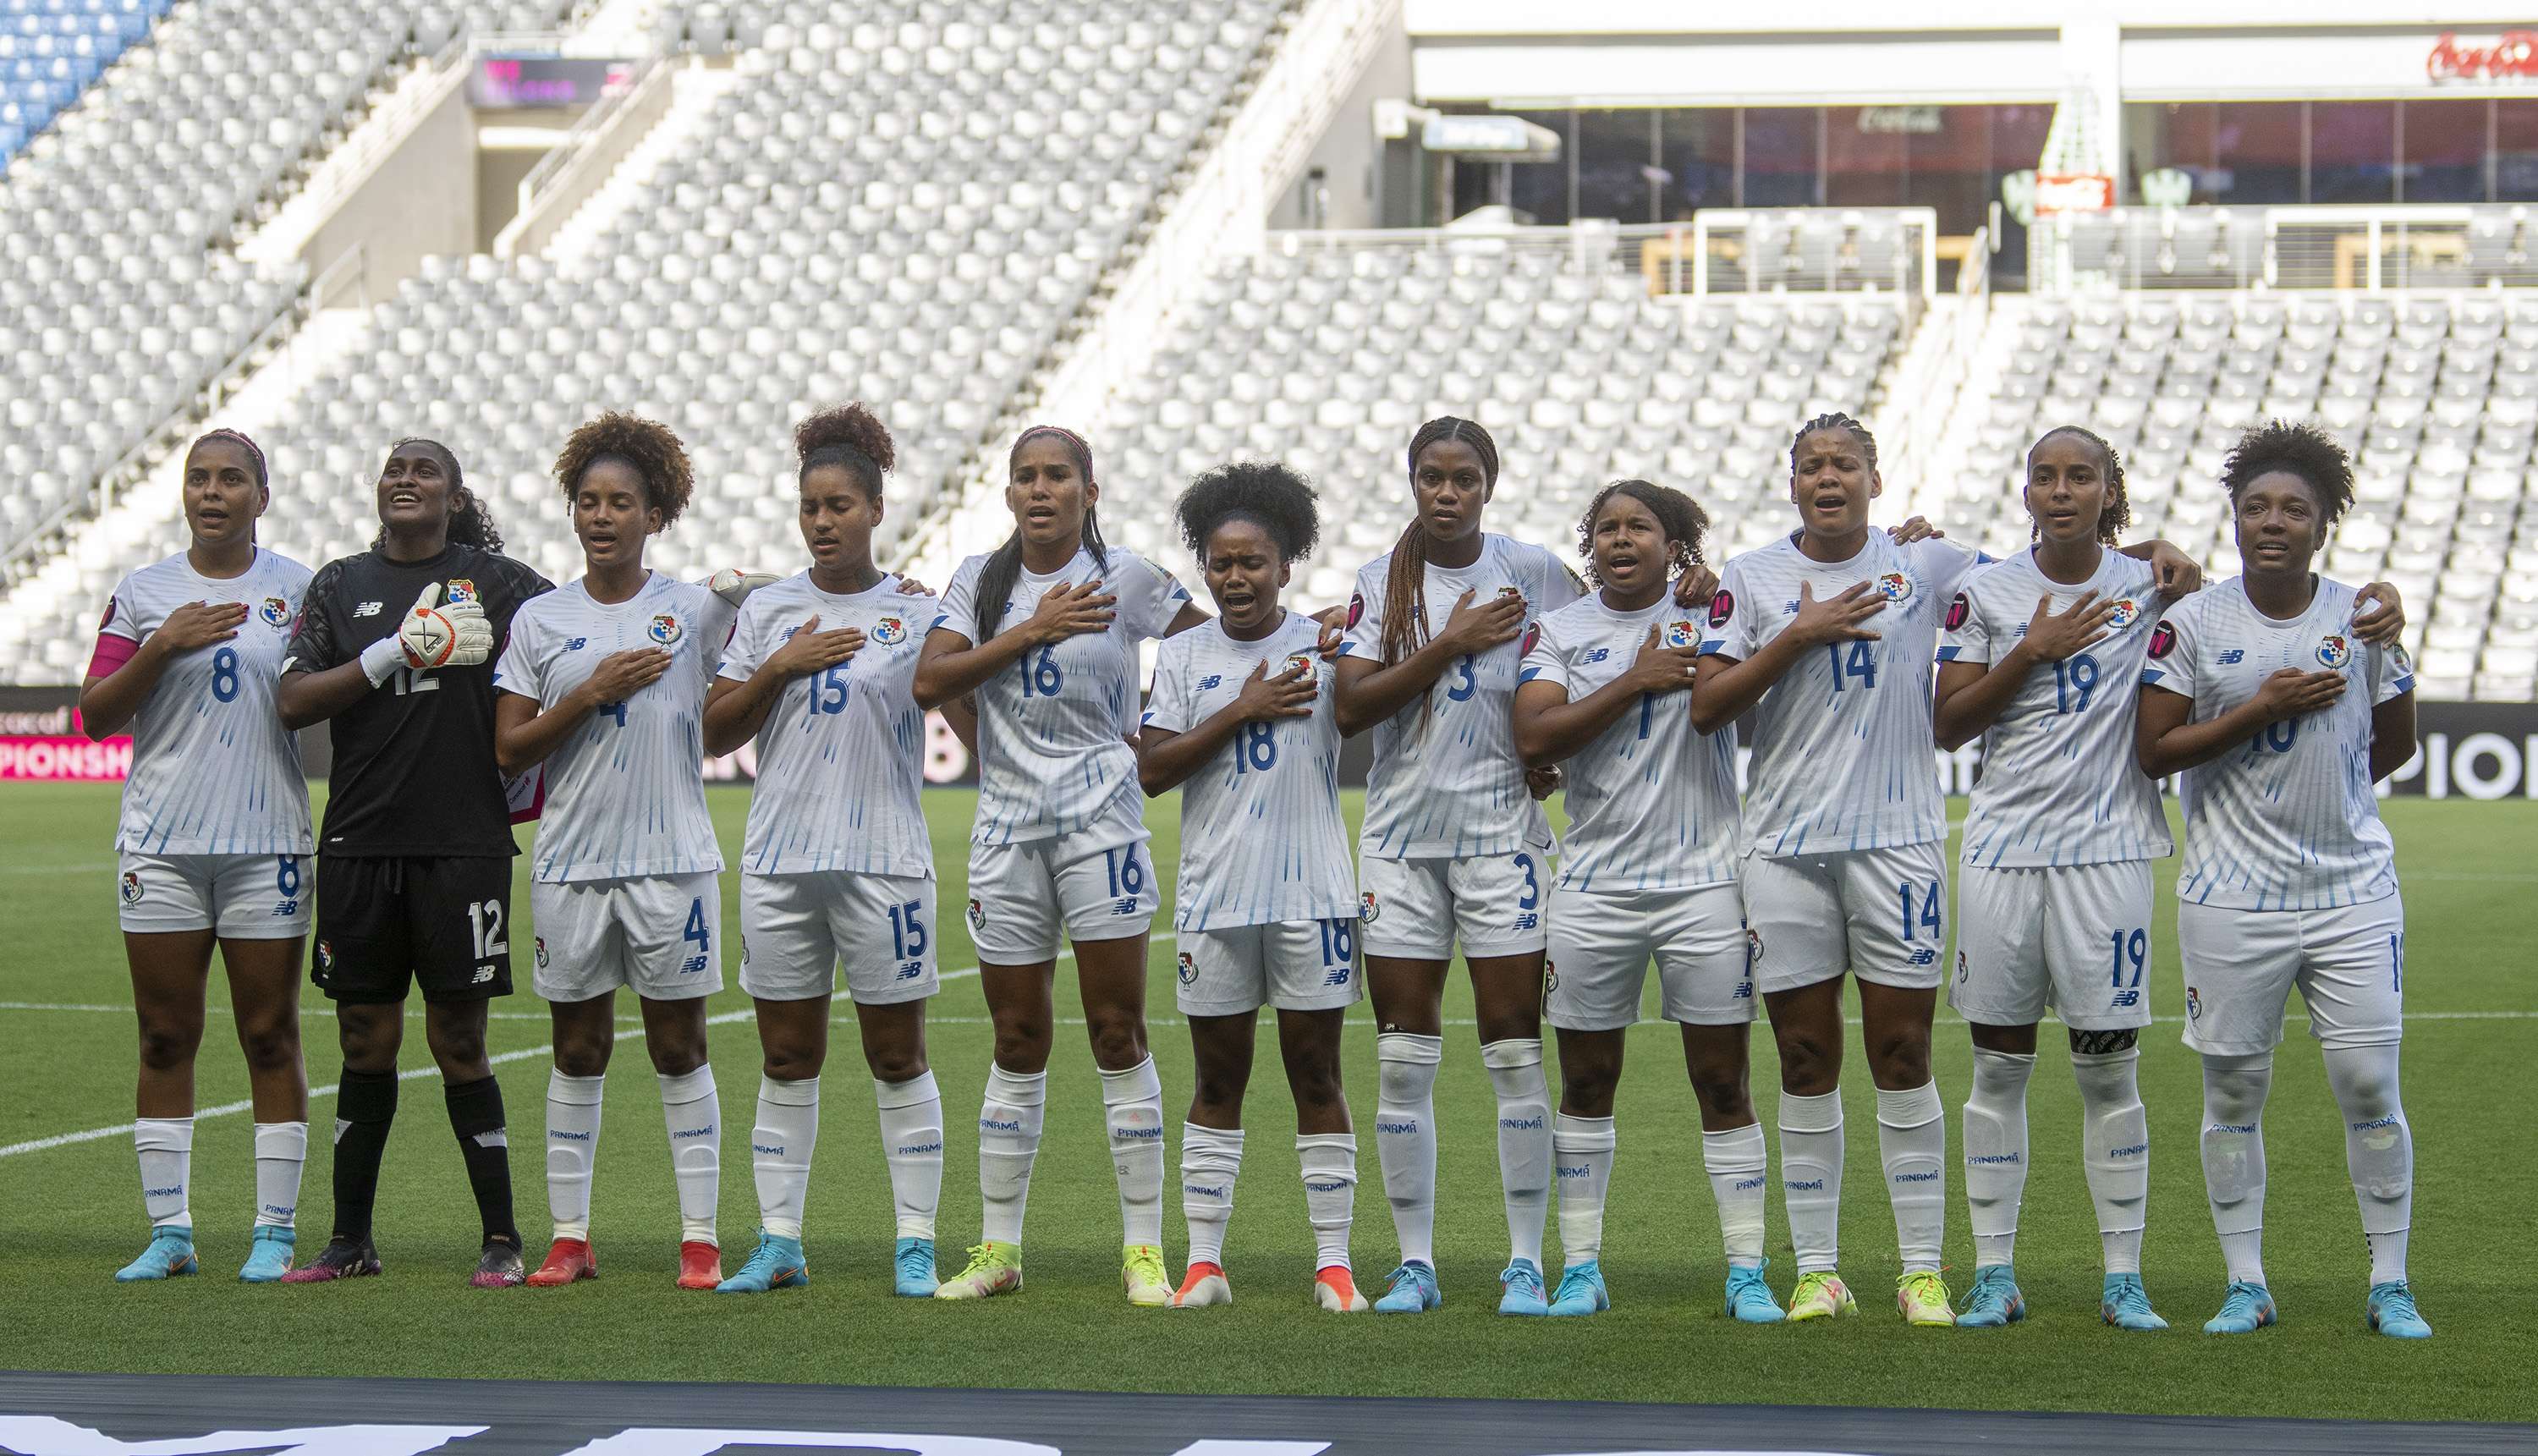 La selección femenina de Panamá, obligada a ganar. /Foto: EFE